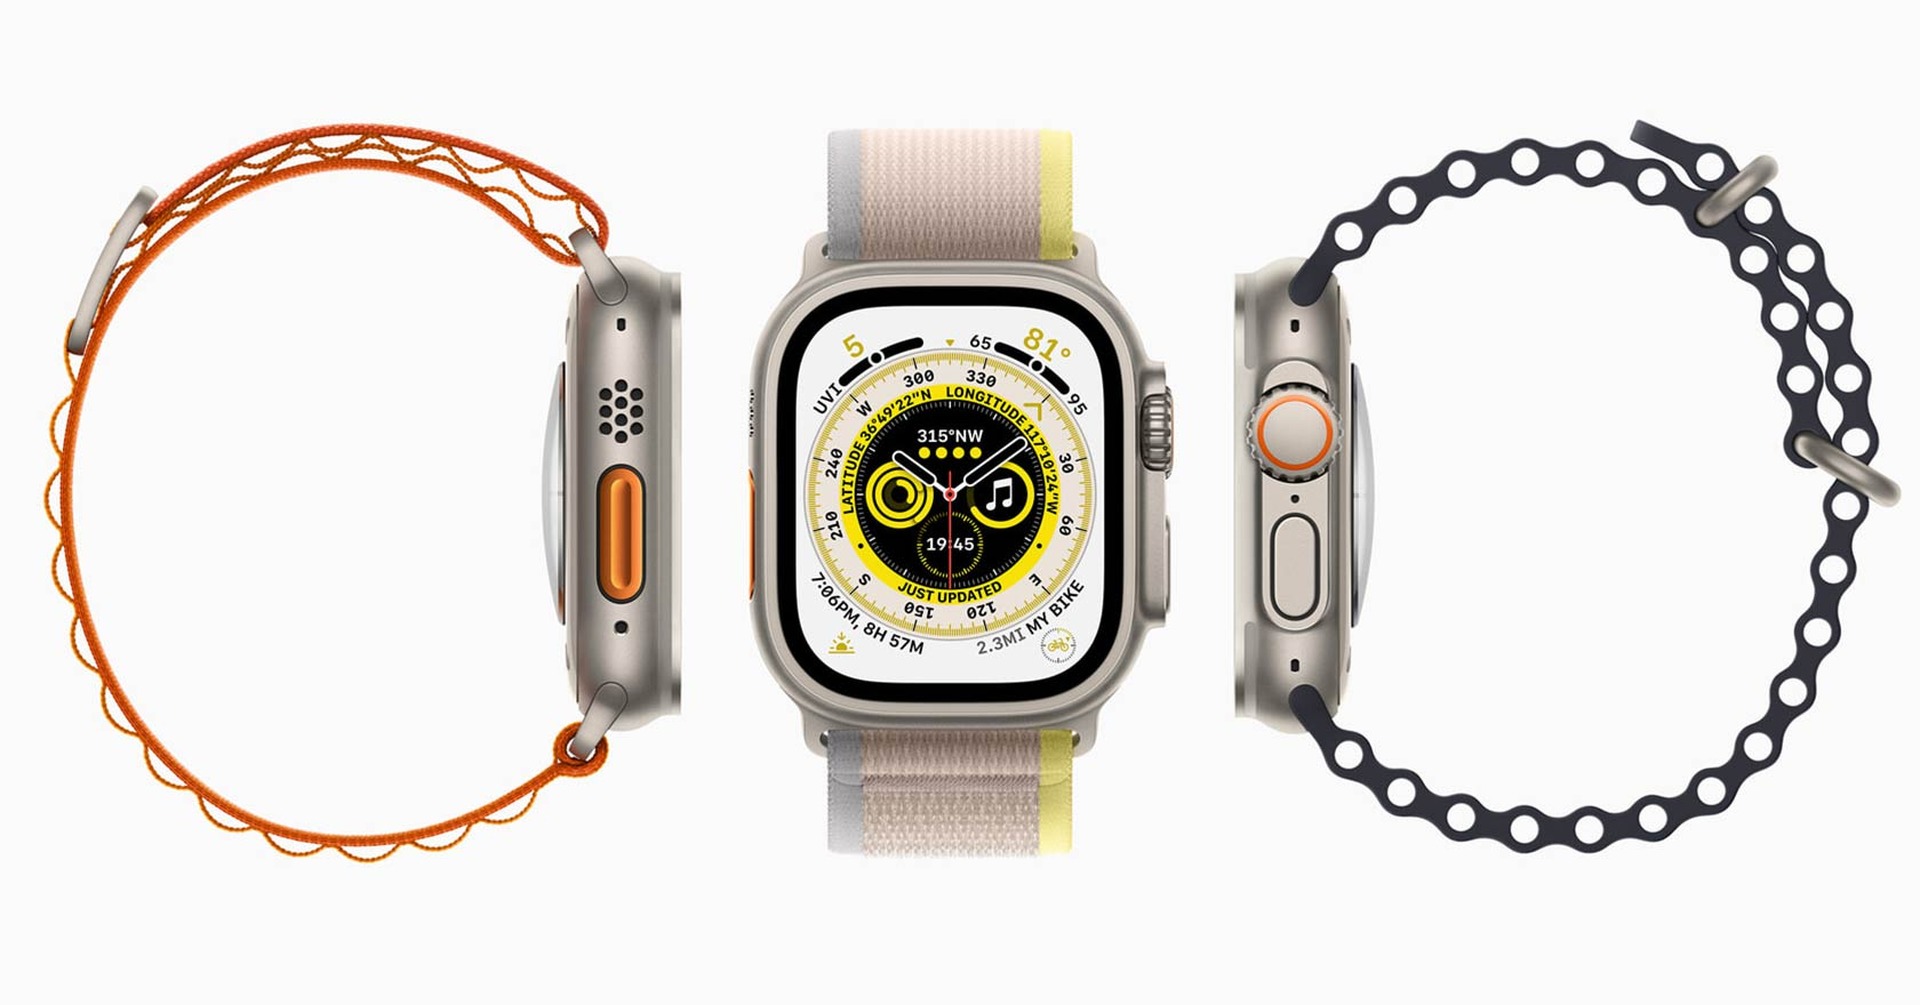 Apple Watch Ultraが初のタイムセール対象に。Amazon新生活セールで